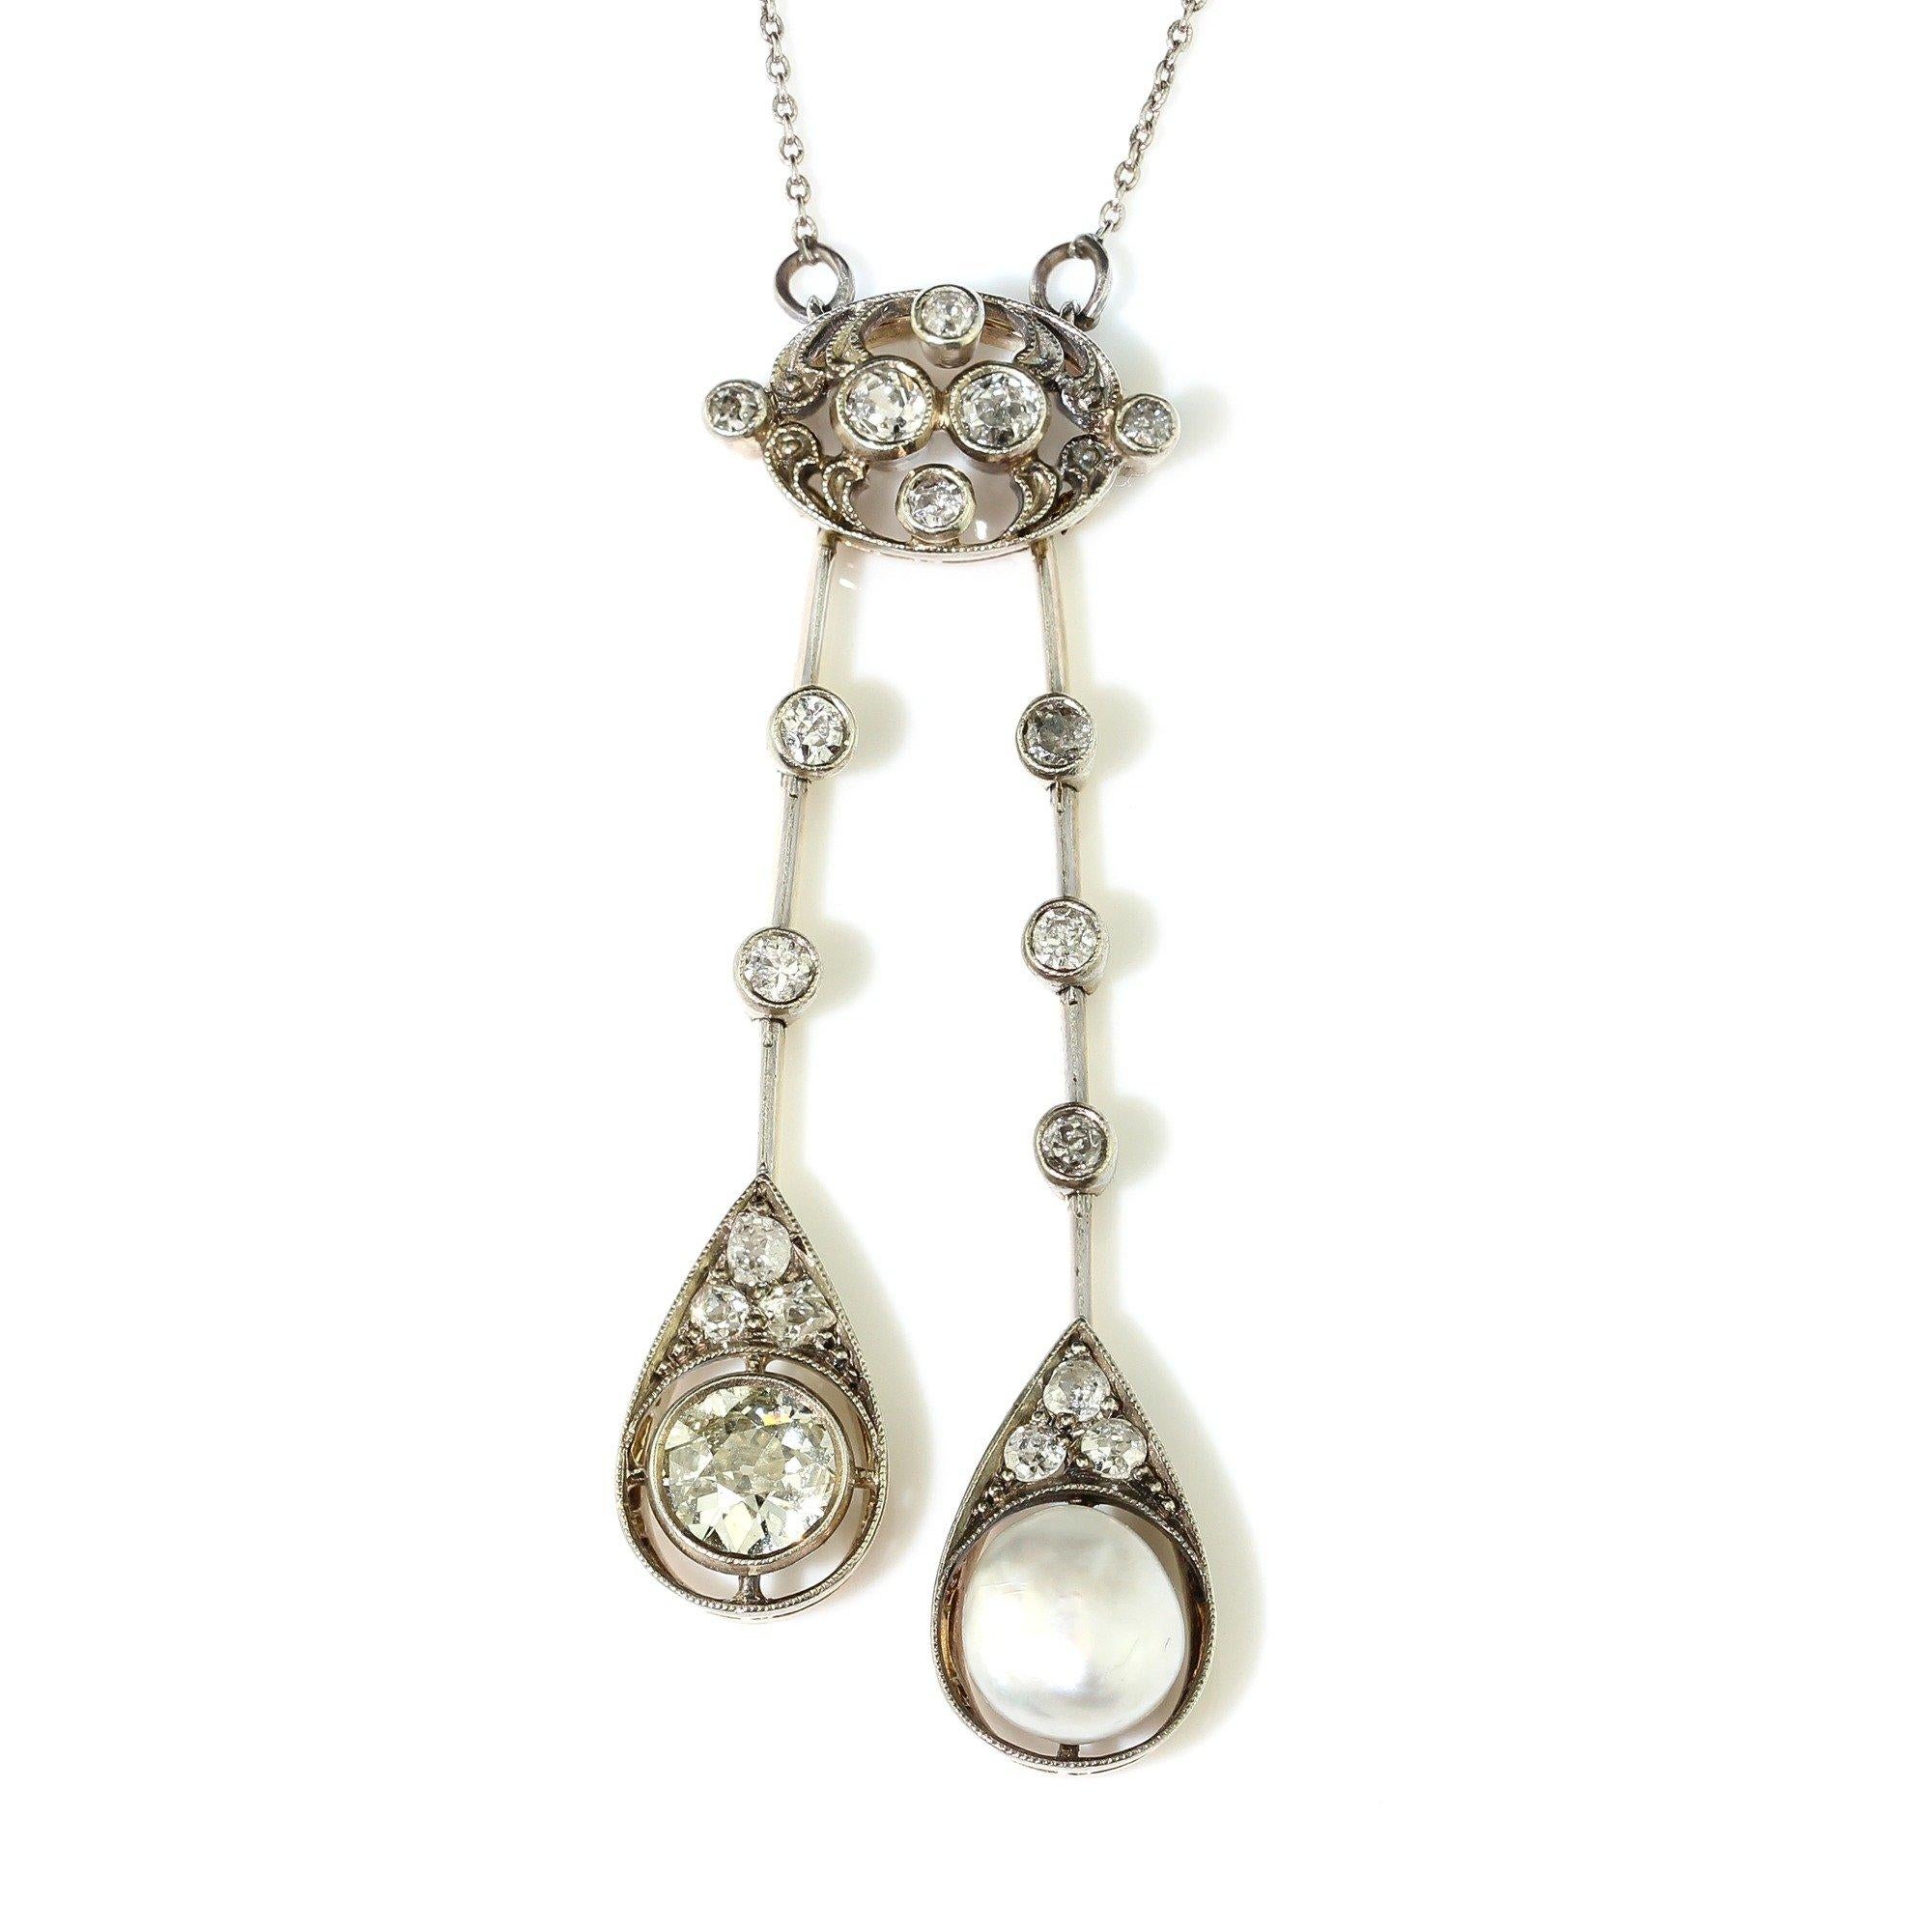 Rehaussez votre style avec cet exquis collier édouardien en or 18 carats, doté d'un superbe pendentif. 

Fabriquée à la main en 1910, cette pièce met en valeur une perle naturelle de 9 mm de diamètre et des diamants de taille ancienne. 